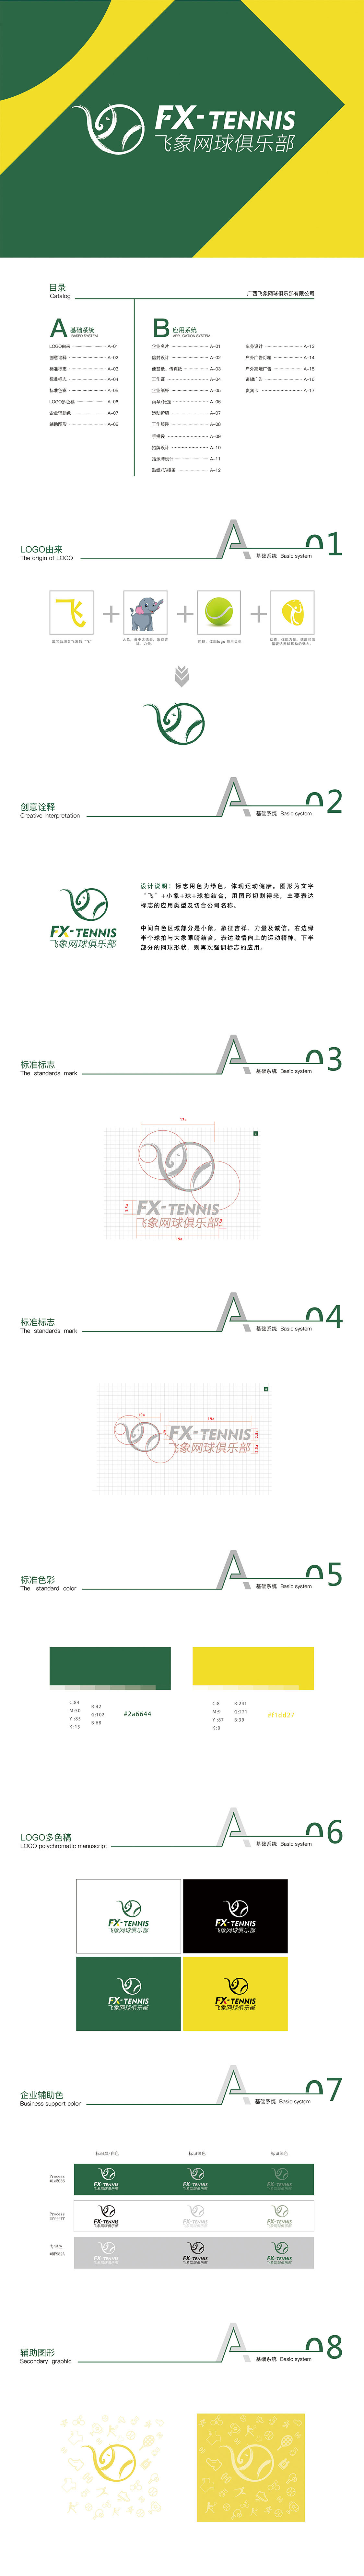 小螳螂—飞象网球俱乐部VI设计图0